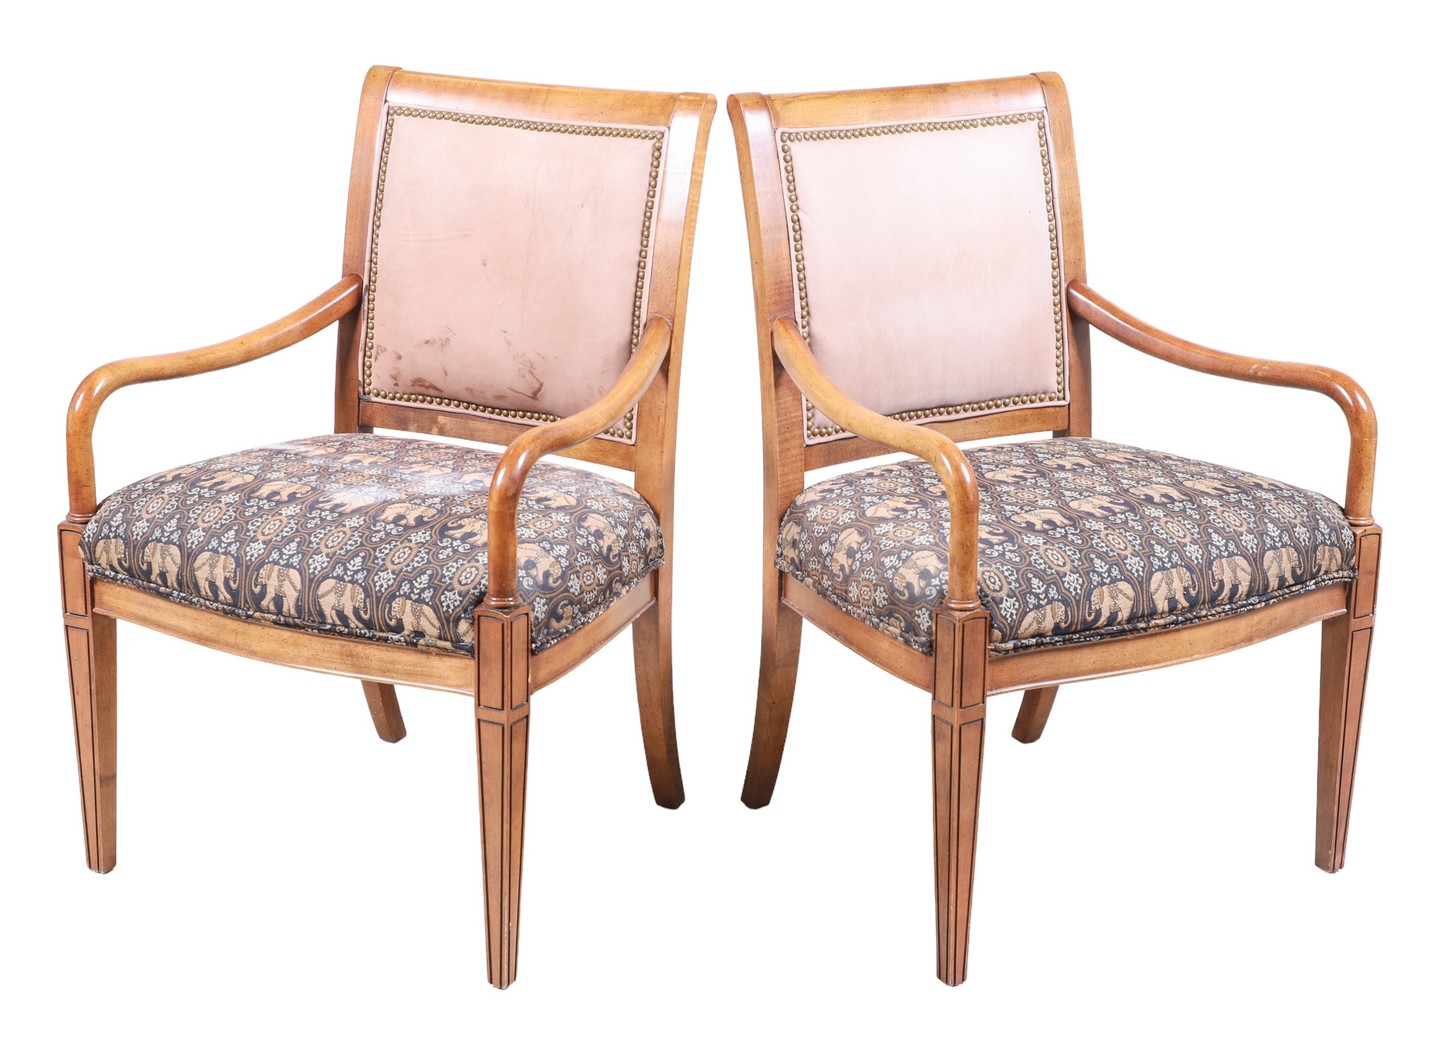 Pair Regency style upholstered